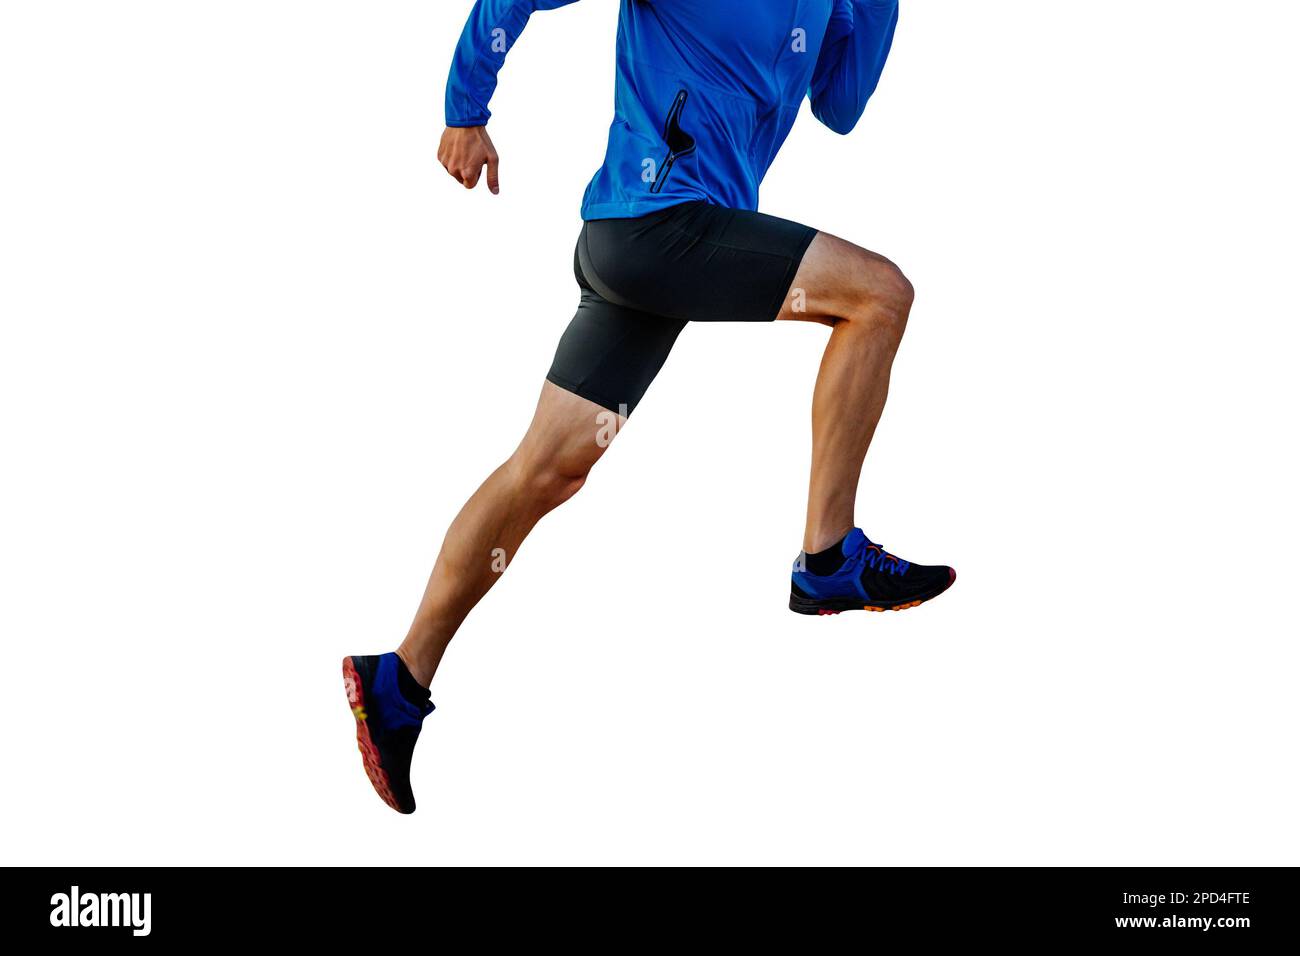 runner maschio in giacca a vento blu e collant neri in salita, silhouette tagliata su sfondo bianco, foto sportiva Foto Stock